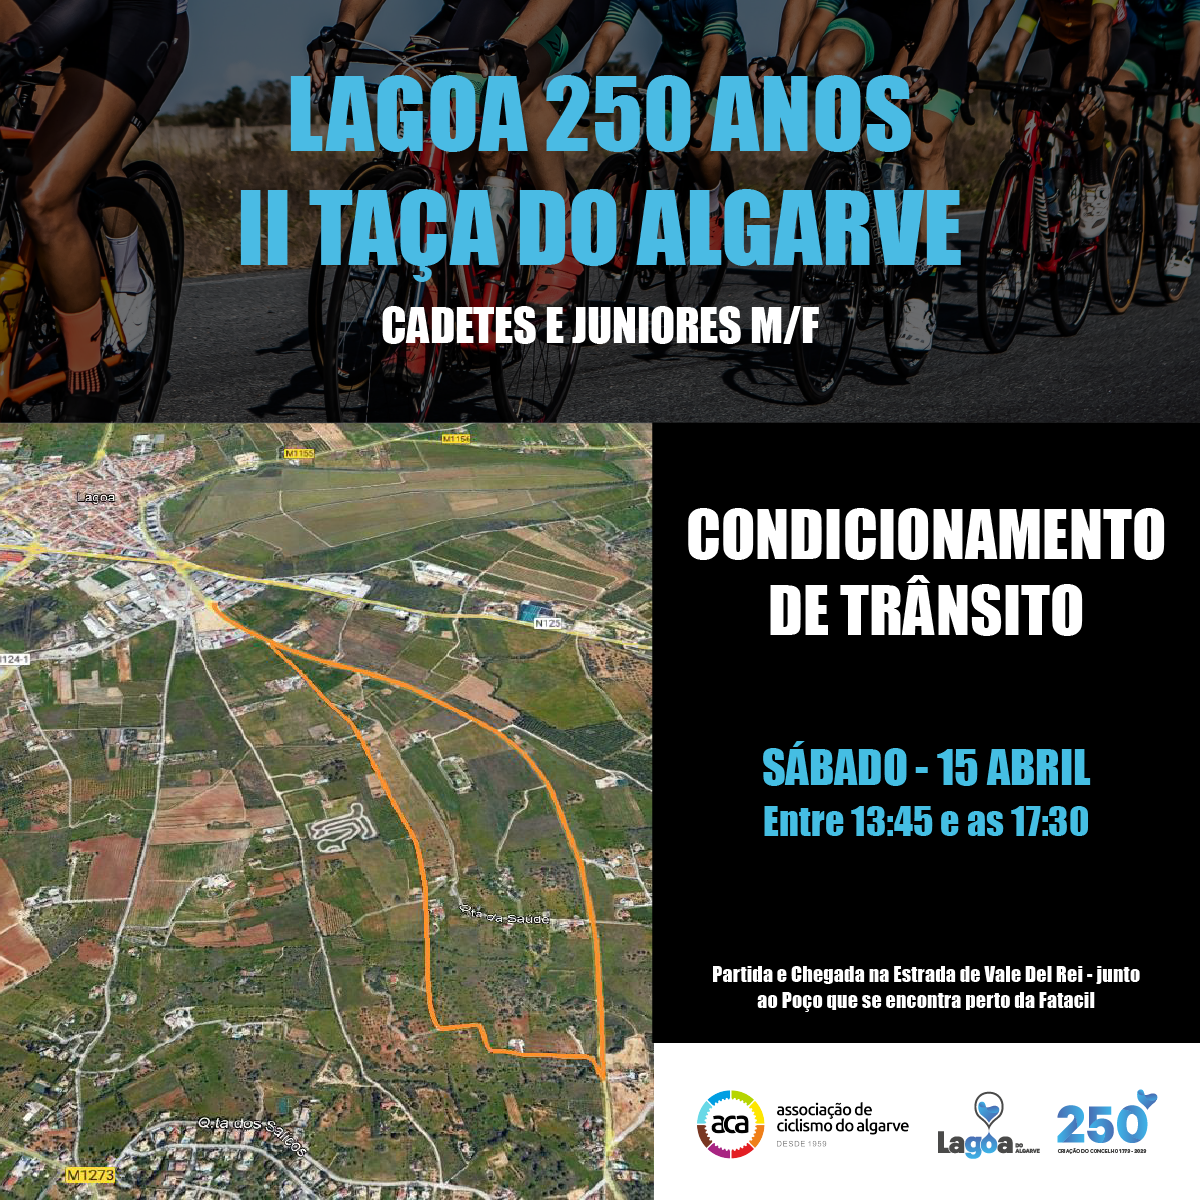 Trânsito Condicionado - II Taça do Algarve de Ciclismo Cadetes e Juniores